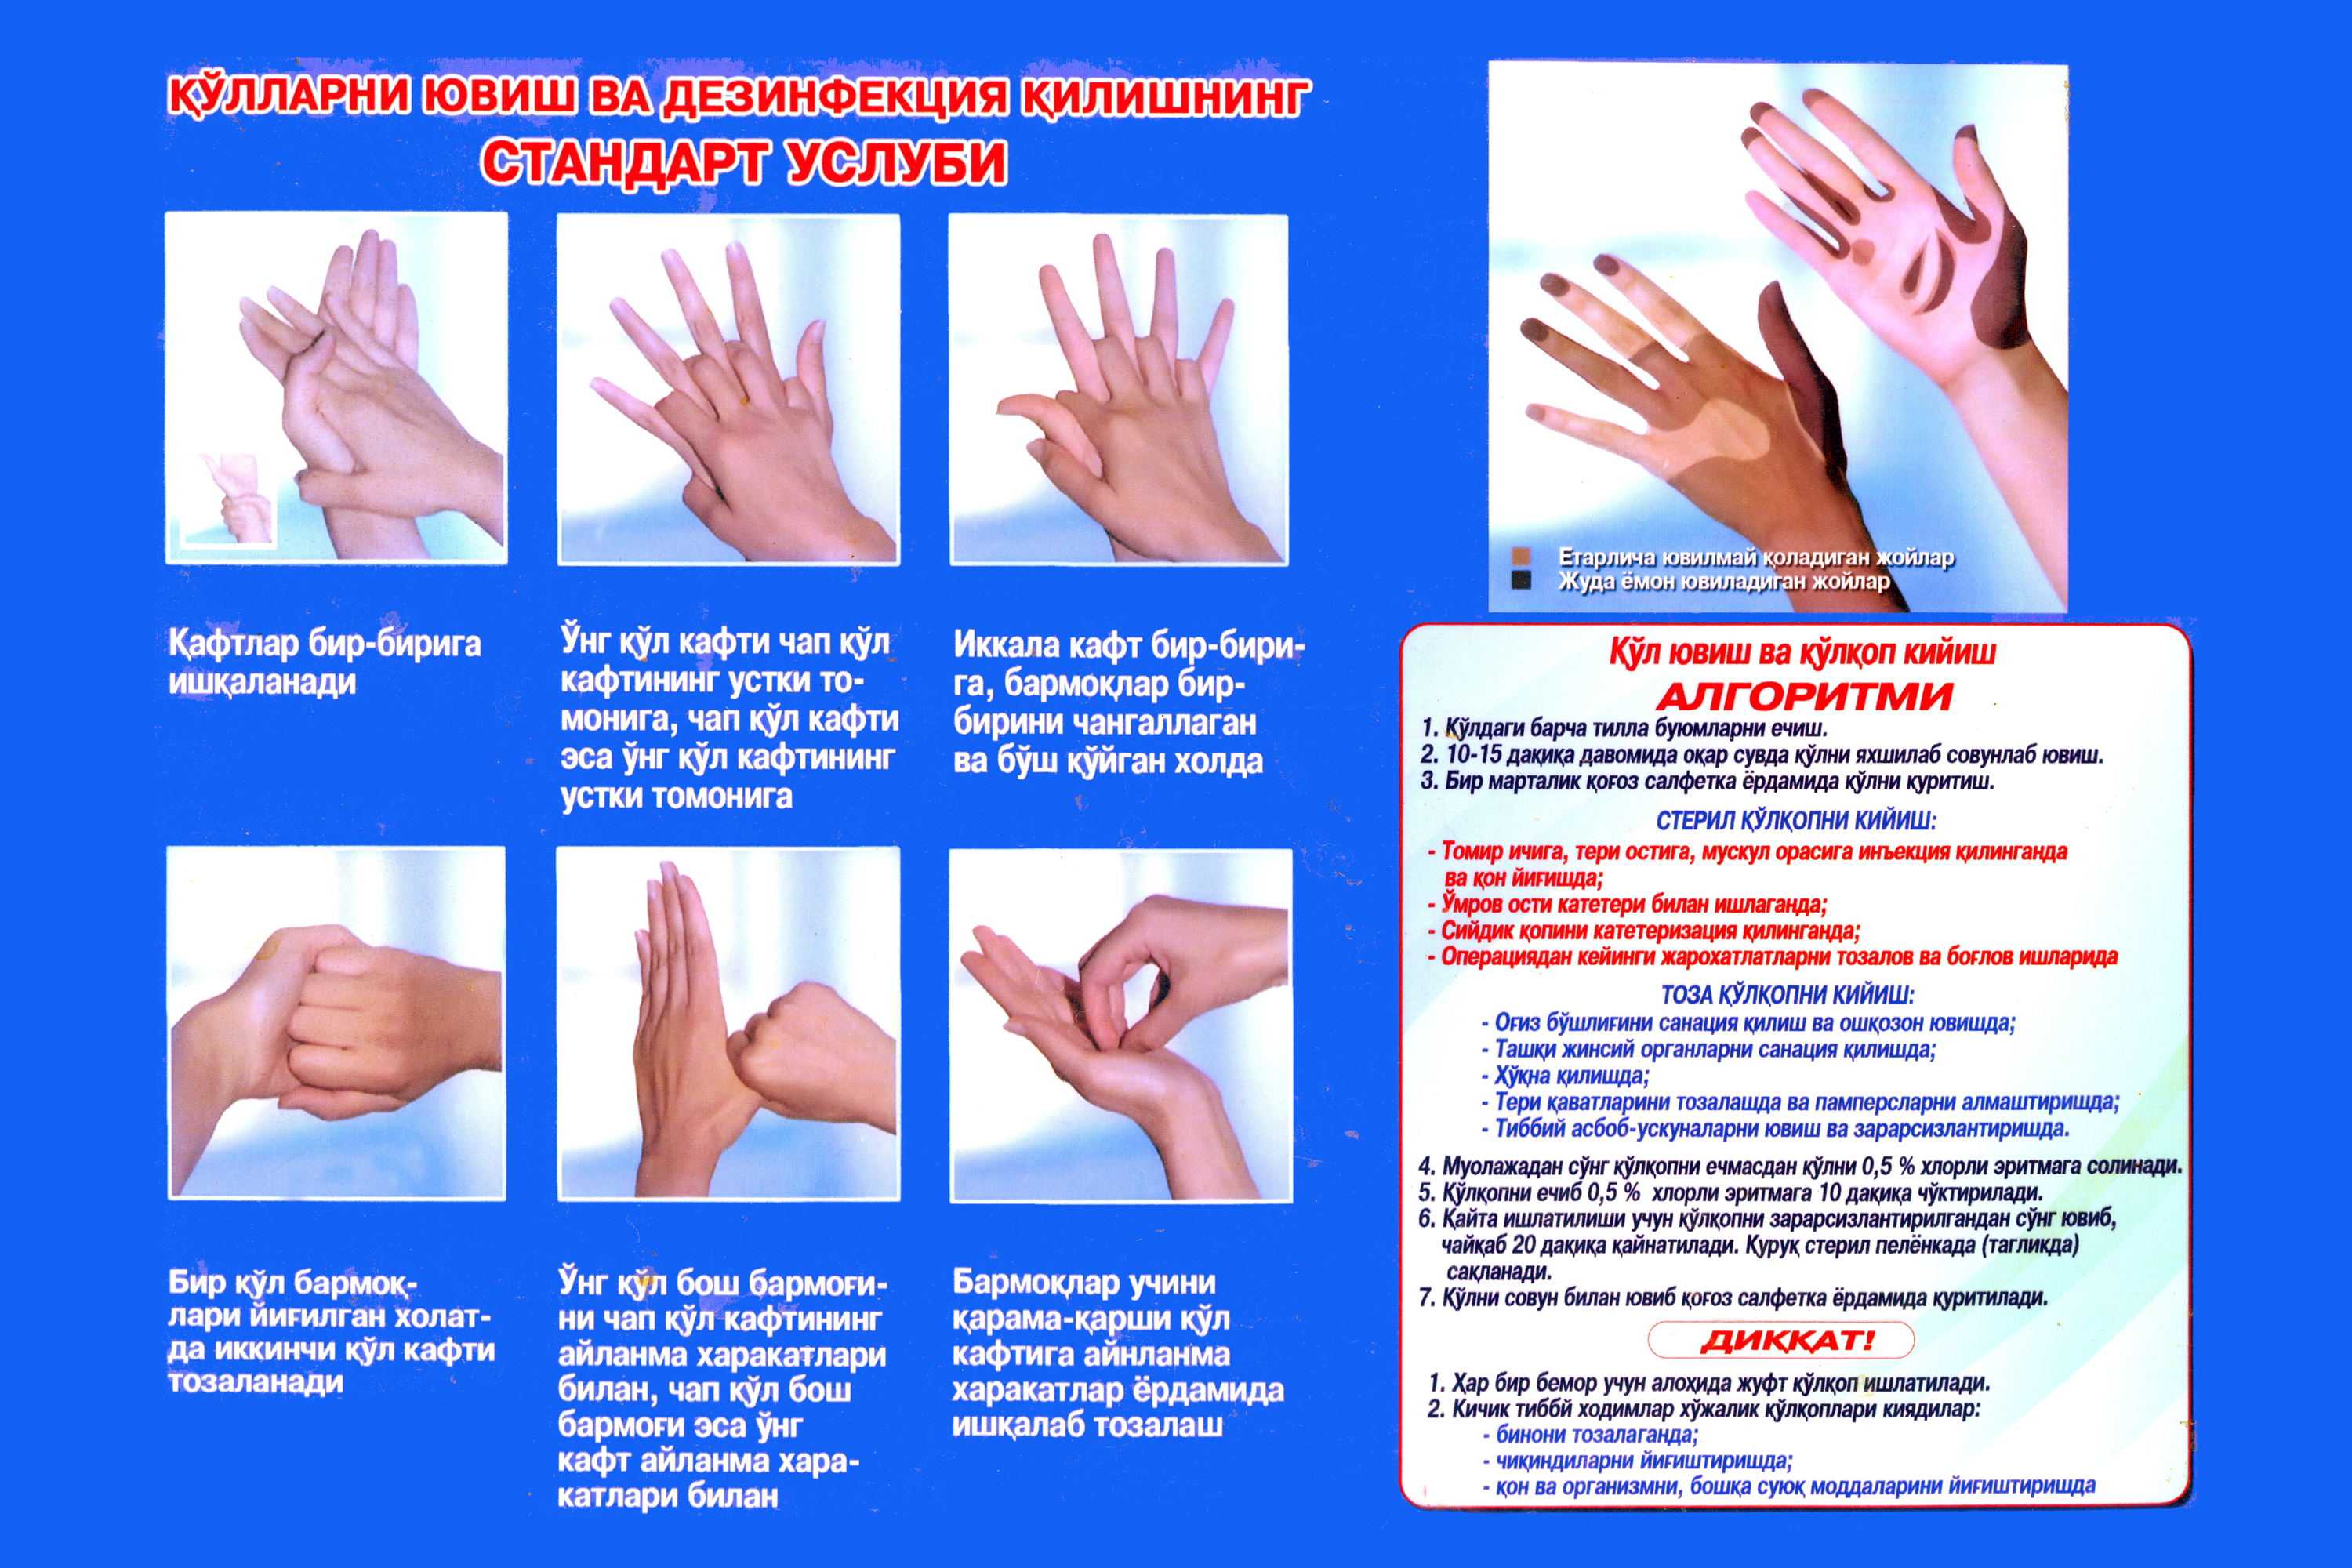 Приказ мытья рук. Гигиеническая обработка рук. Мытье рук медицинского персонала. Техника обработки рук. Гигиена антисептика рук.